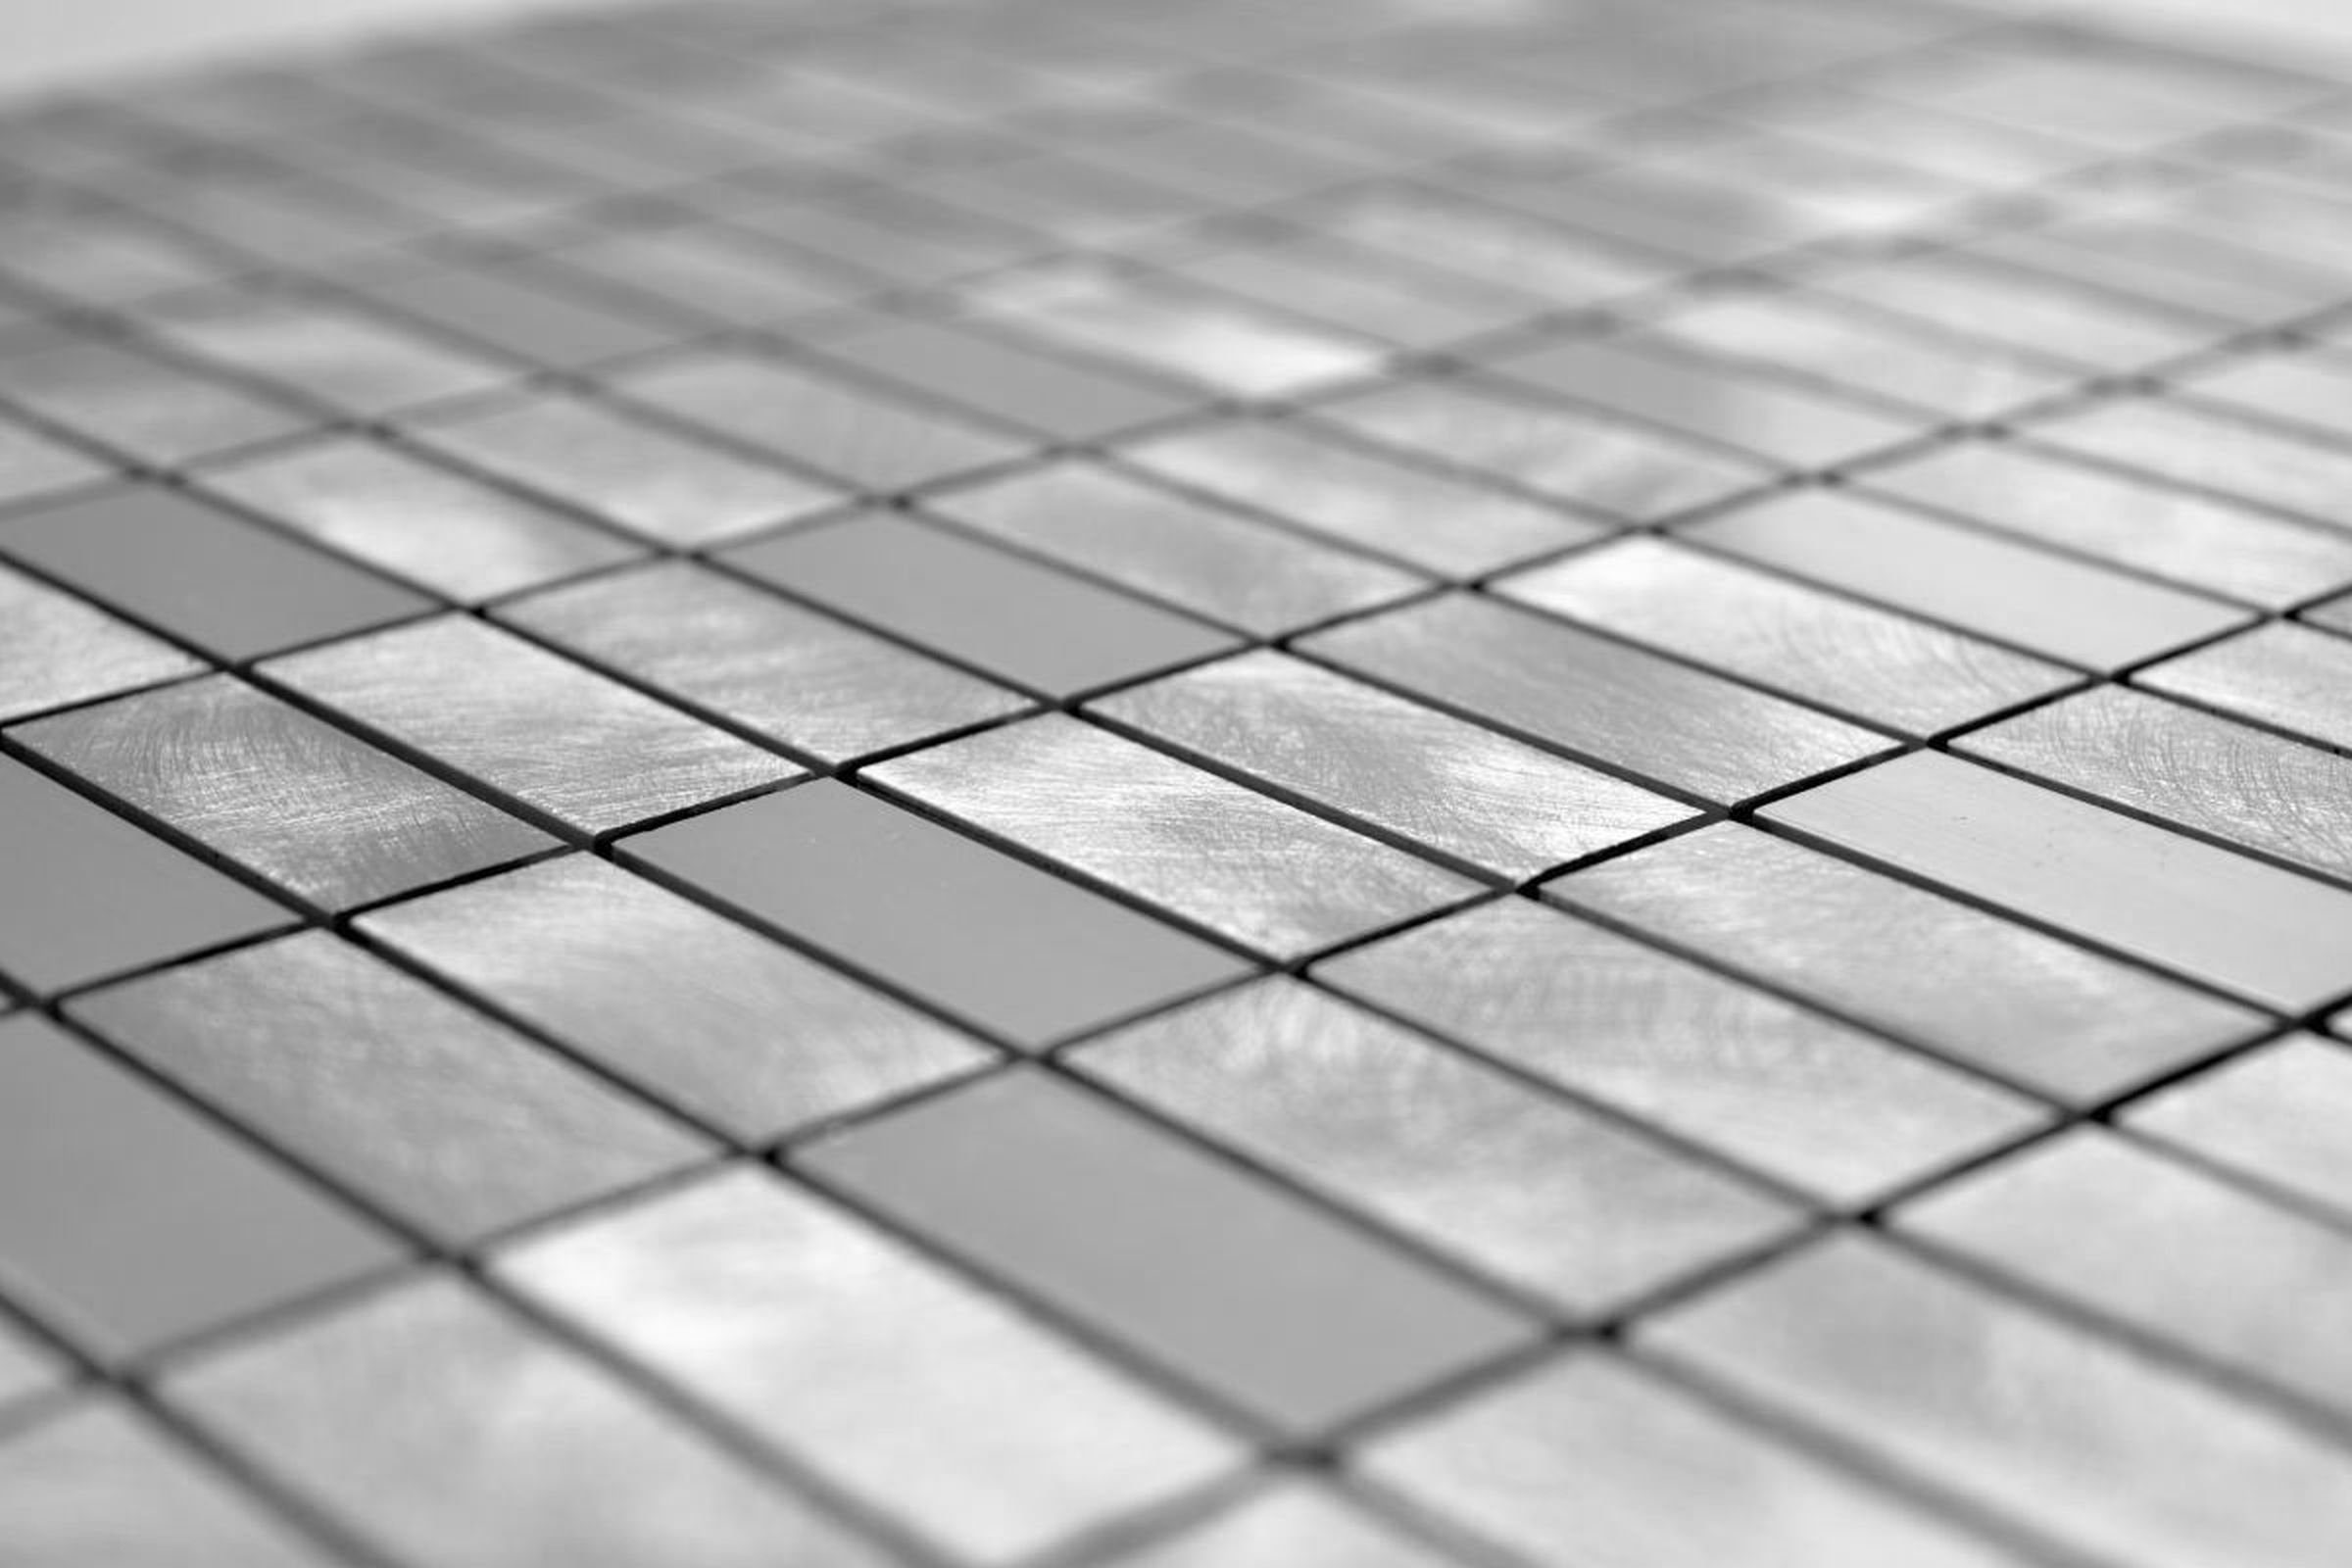 Mosani Mosaikfliesen Mosaik Fliese Aluminium poliert gebürstet Küche silber